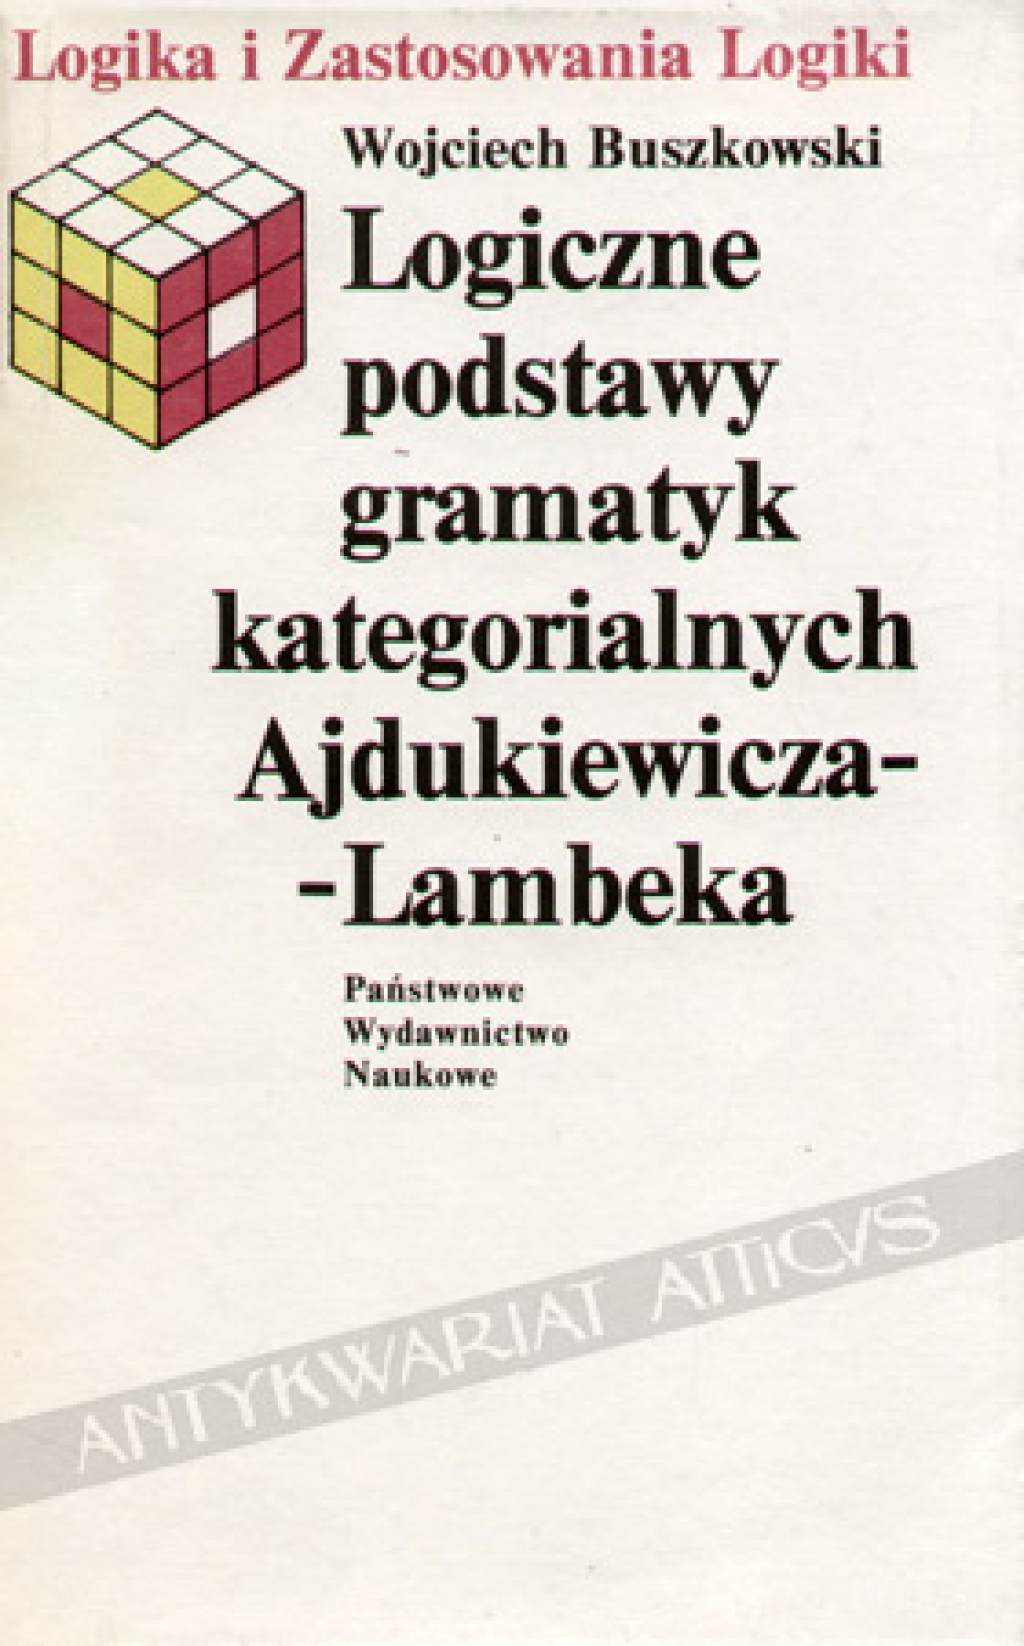 Logiczne podstawy gramatyk kategorialnych Ajdukiewicza-Lambeka